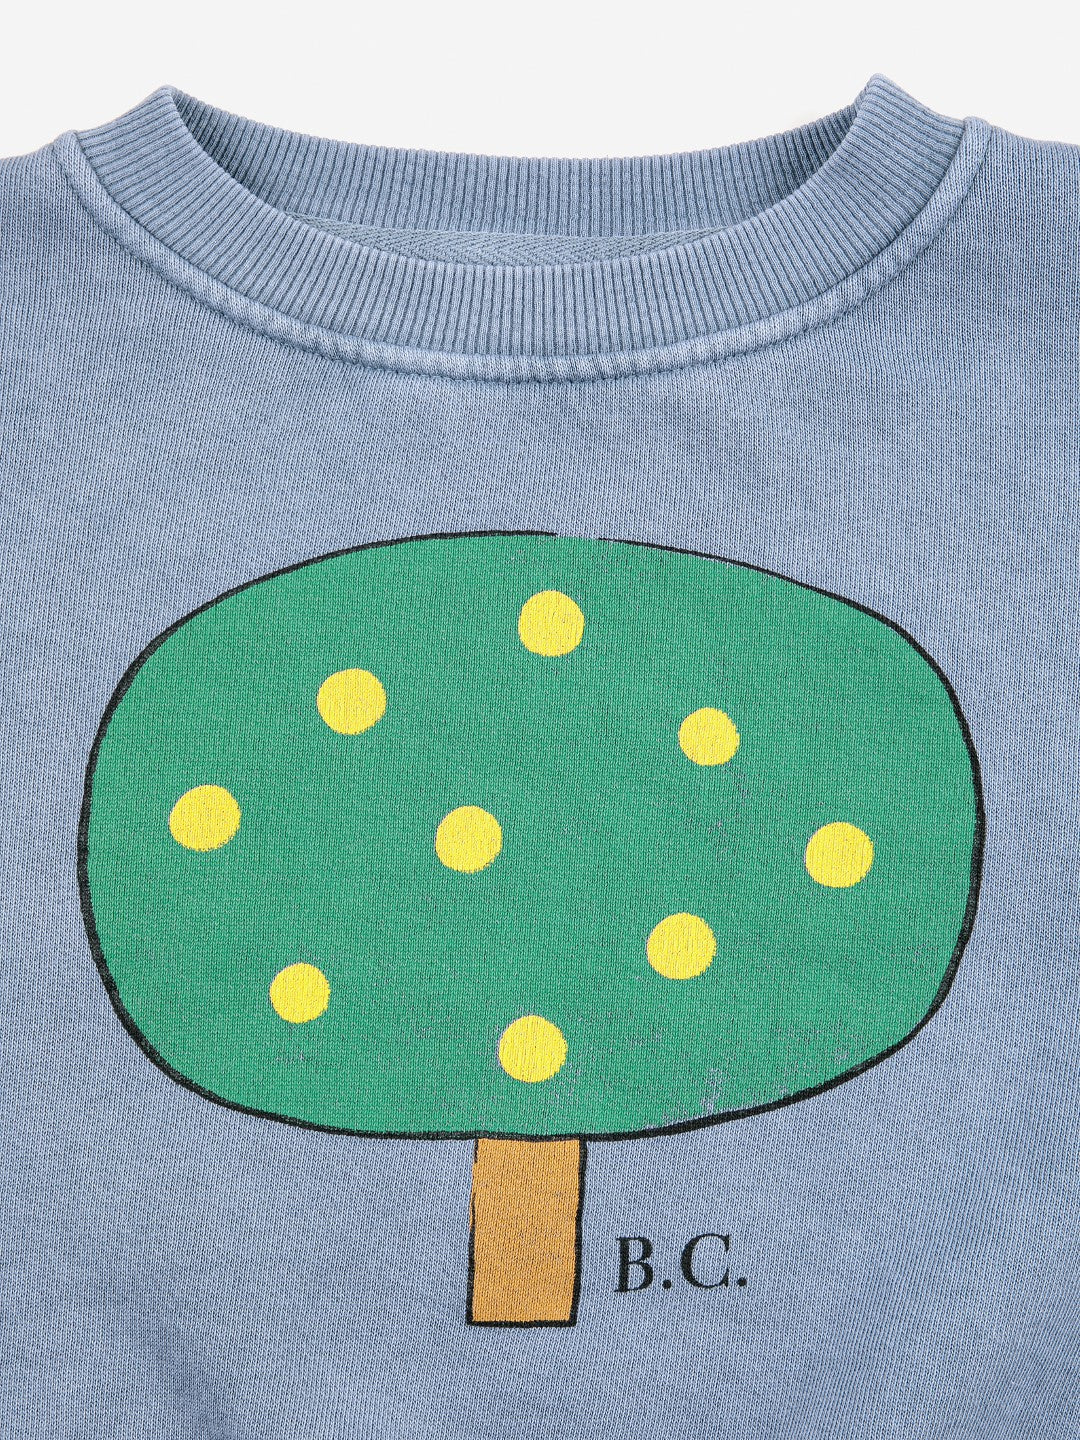 Green Tree Sweatshirt